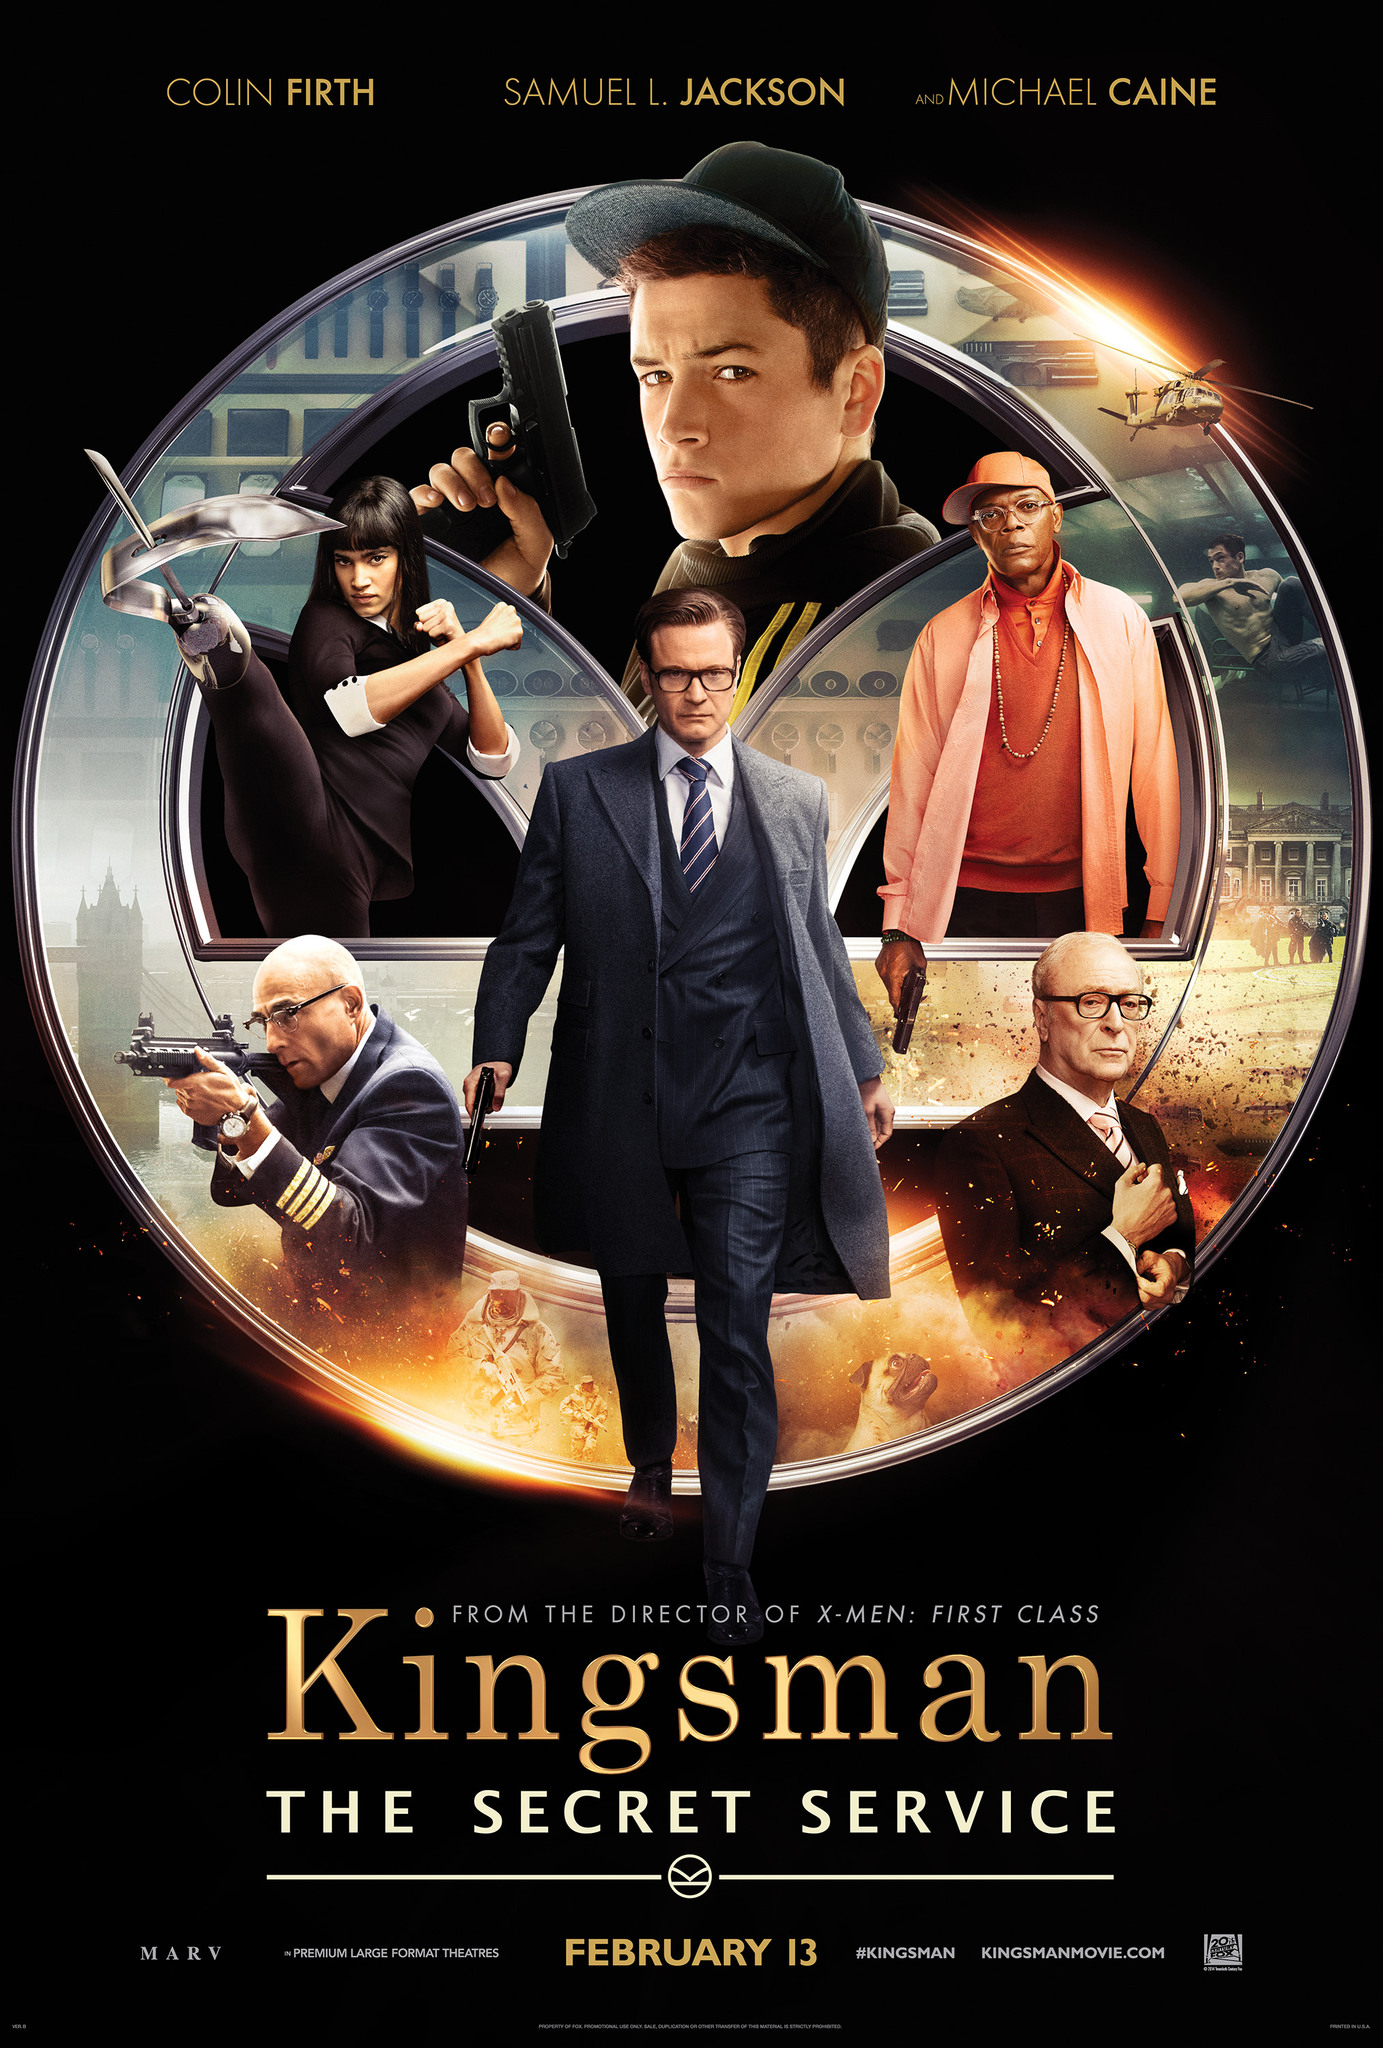 Kingsman: The Secret Service movie posrter.jpg